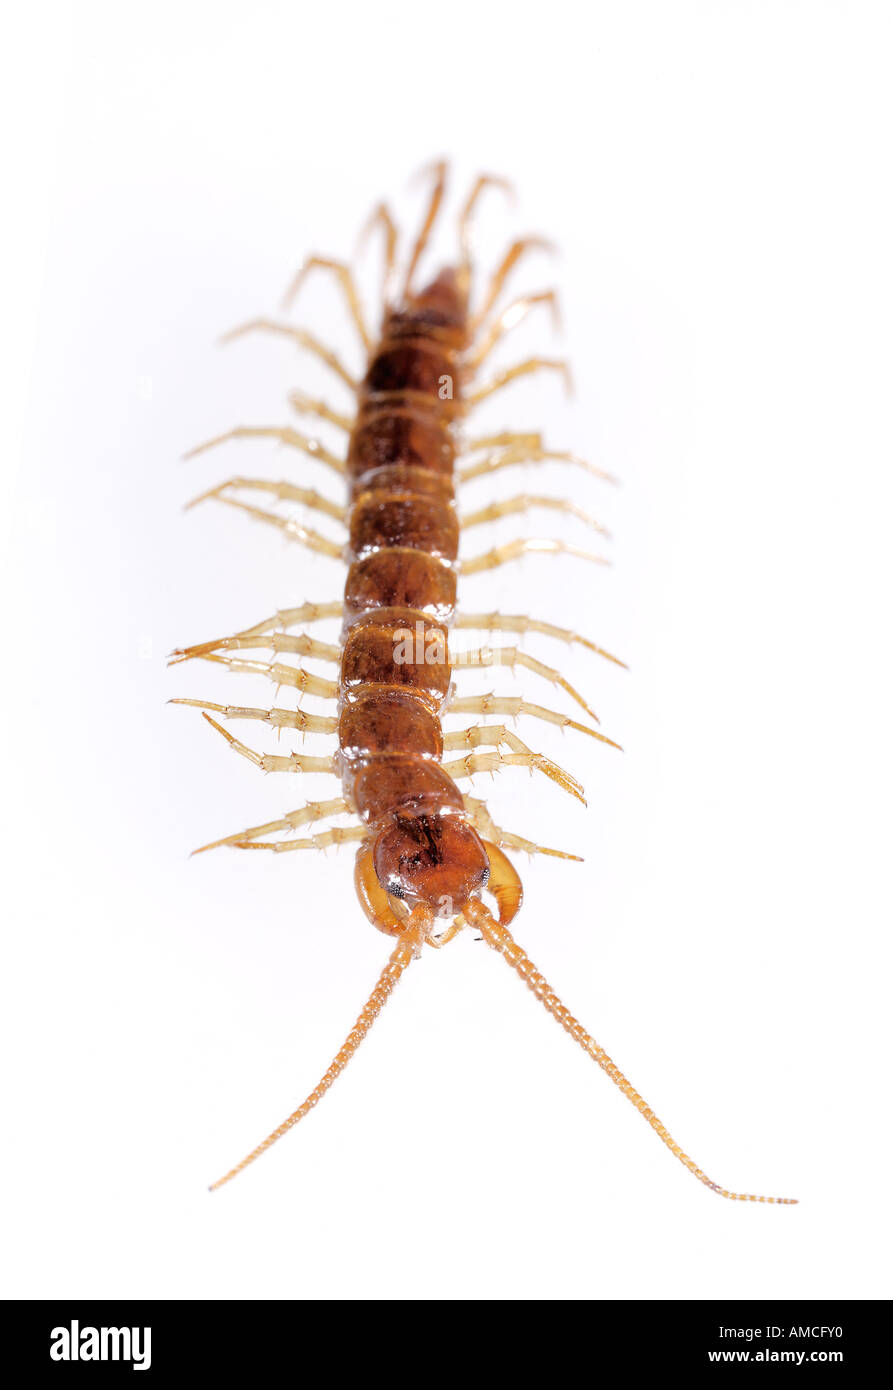 Centipede Lithobius forficatus Stock Photo